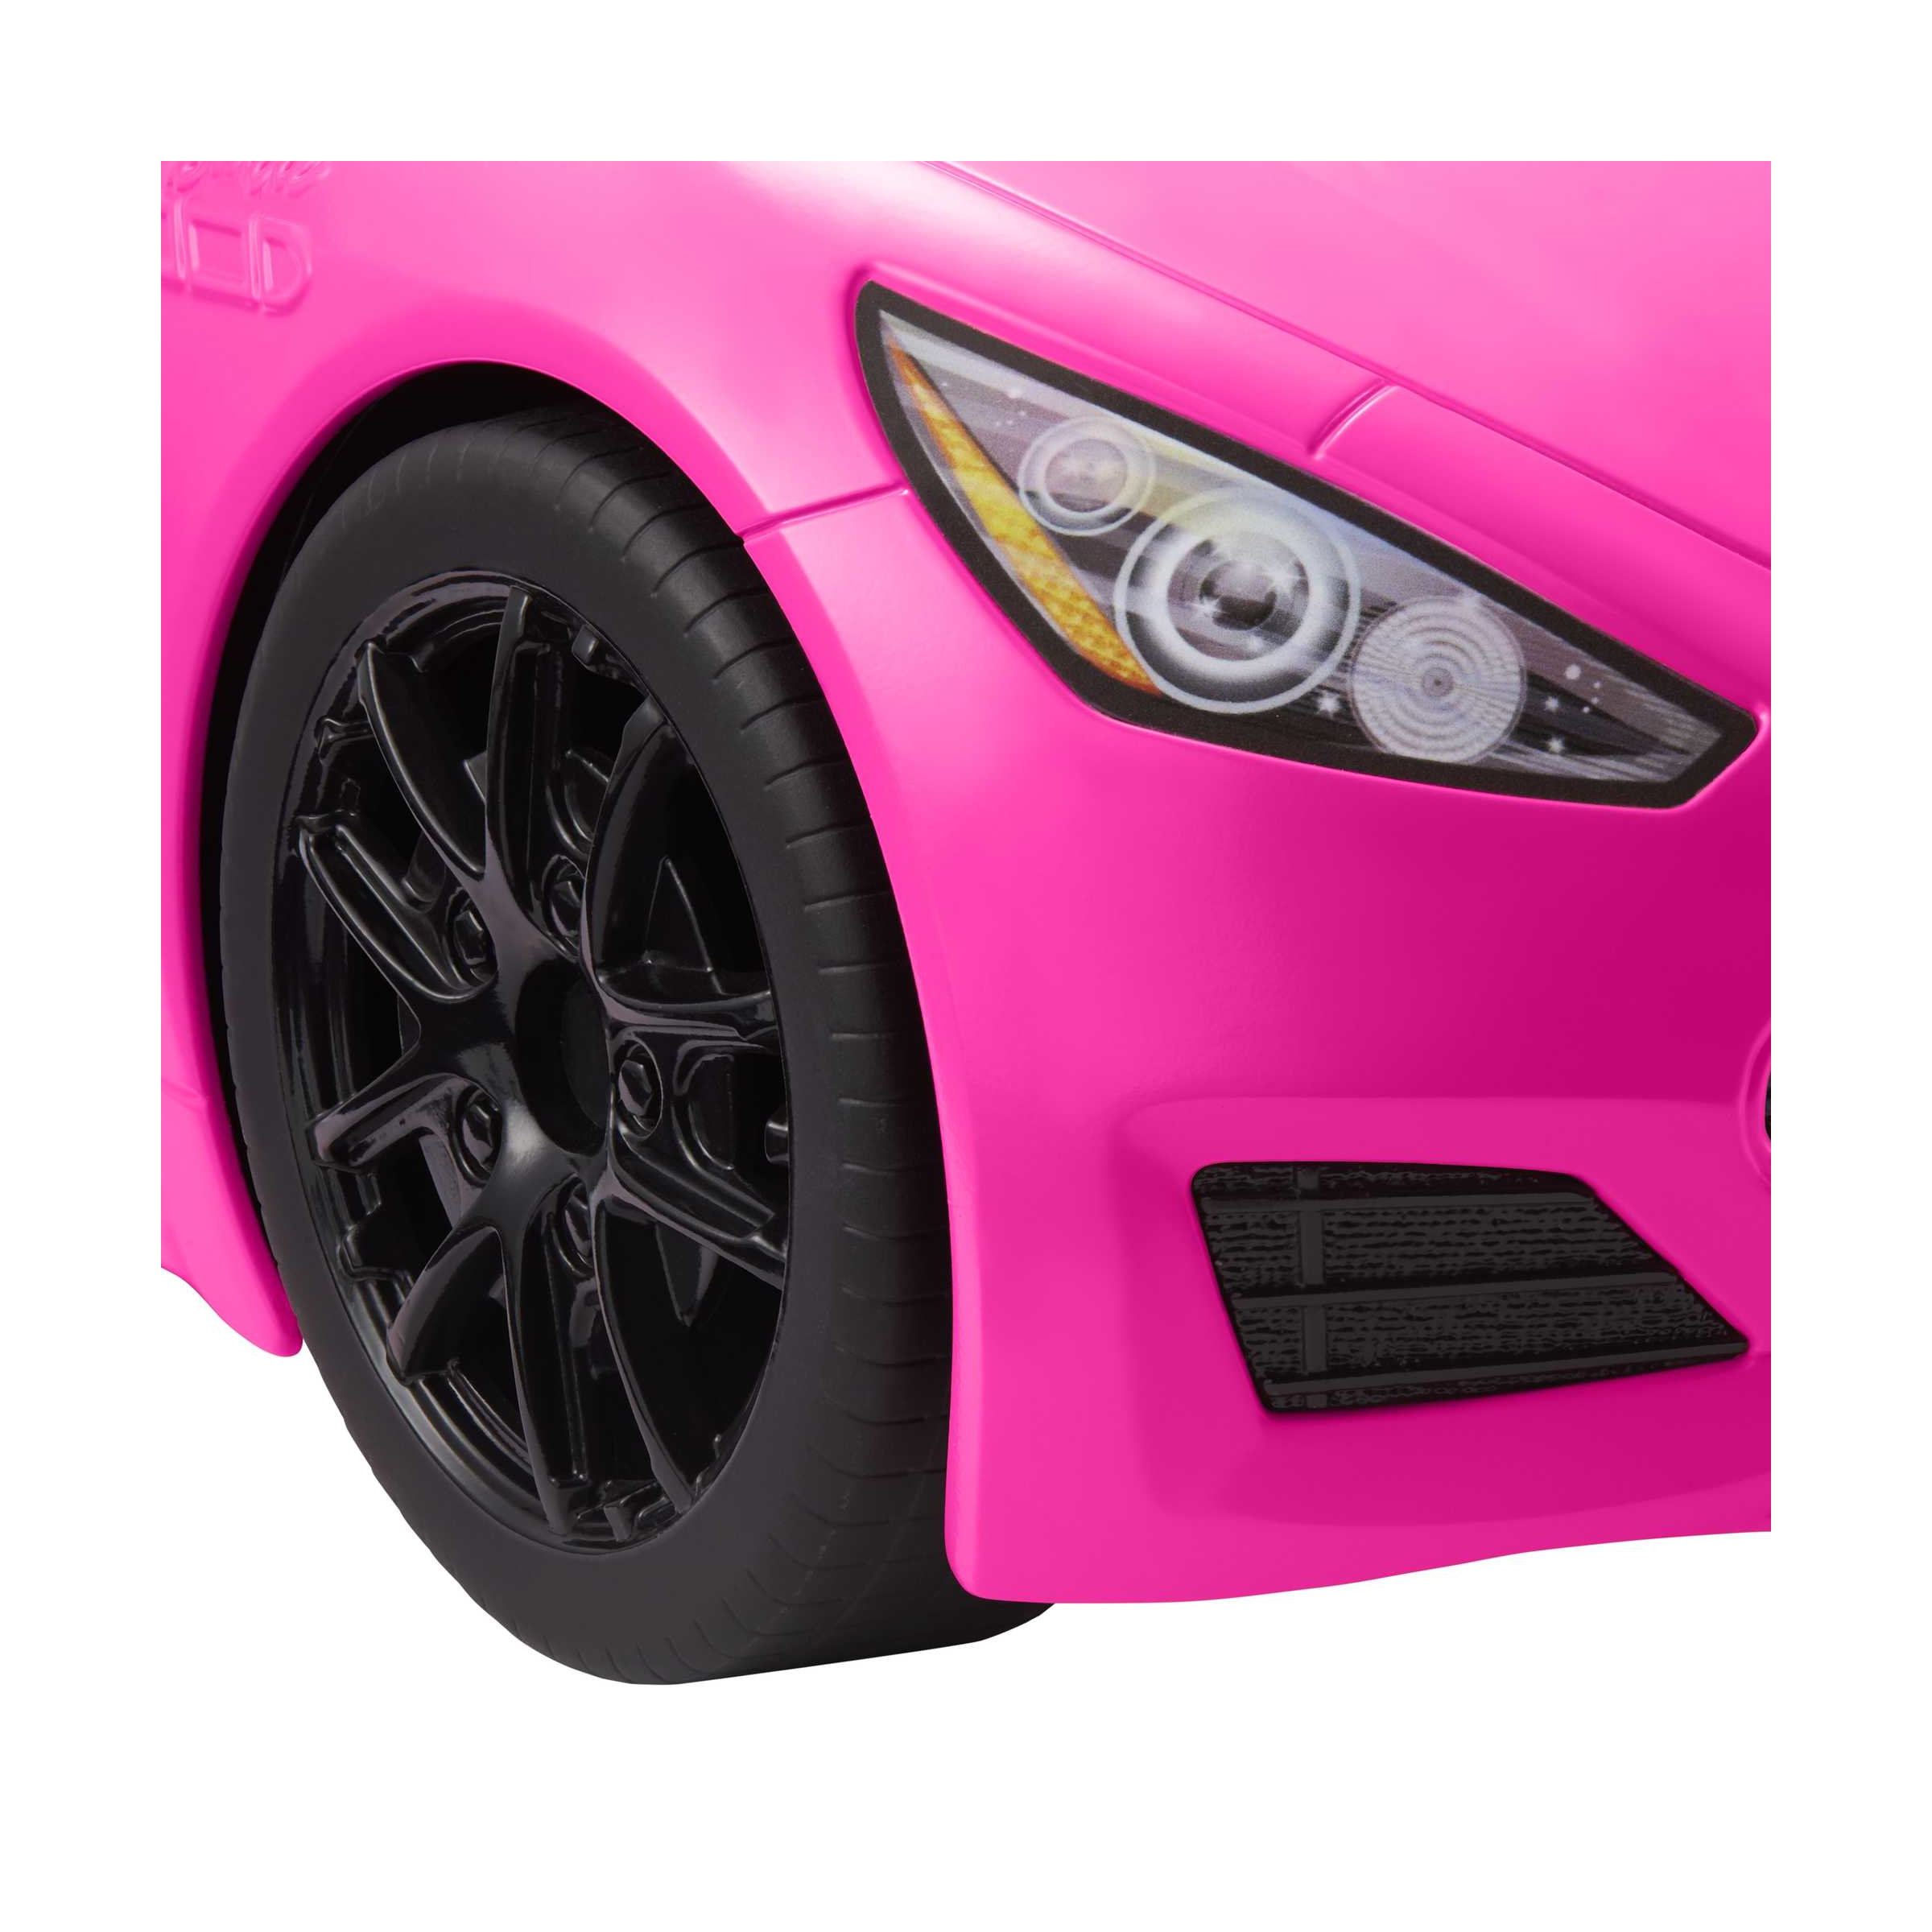 Barbie, cabrio veicolo decapottabile rosa a due posti con ruote funzionanti e dettagli realistici, giocattolo per bambini 3+ anni, hbt92 - Barbie